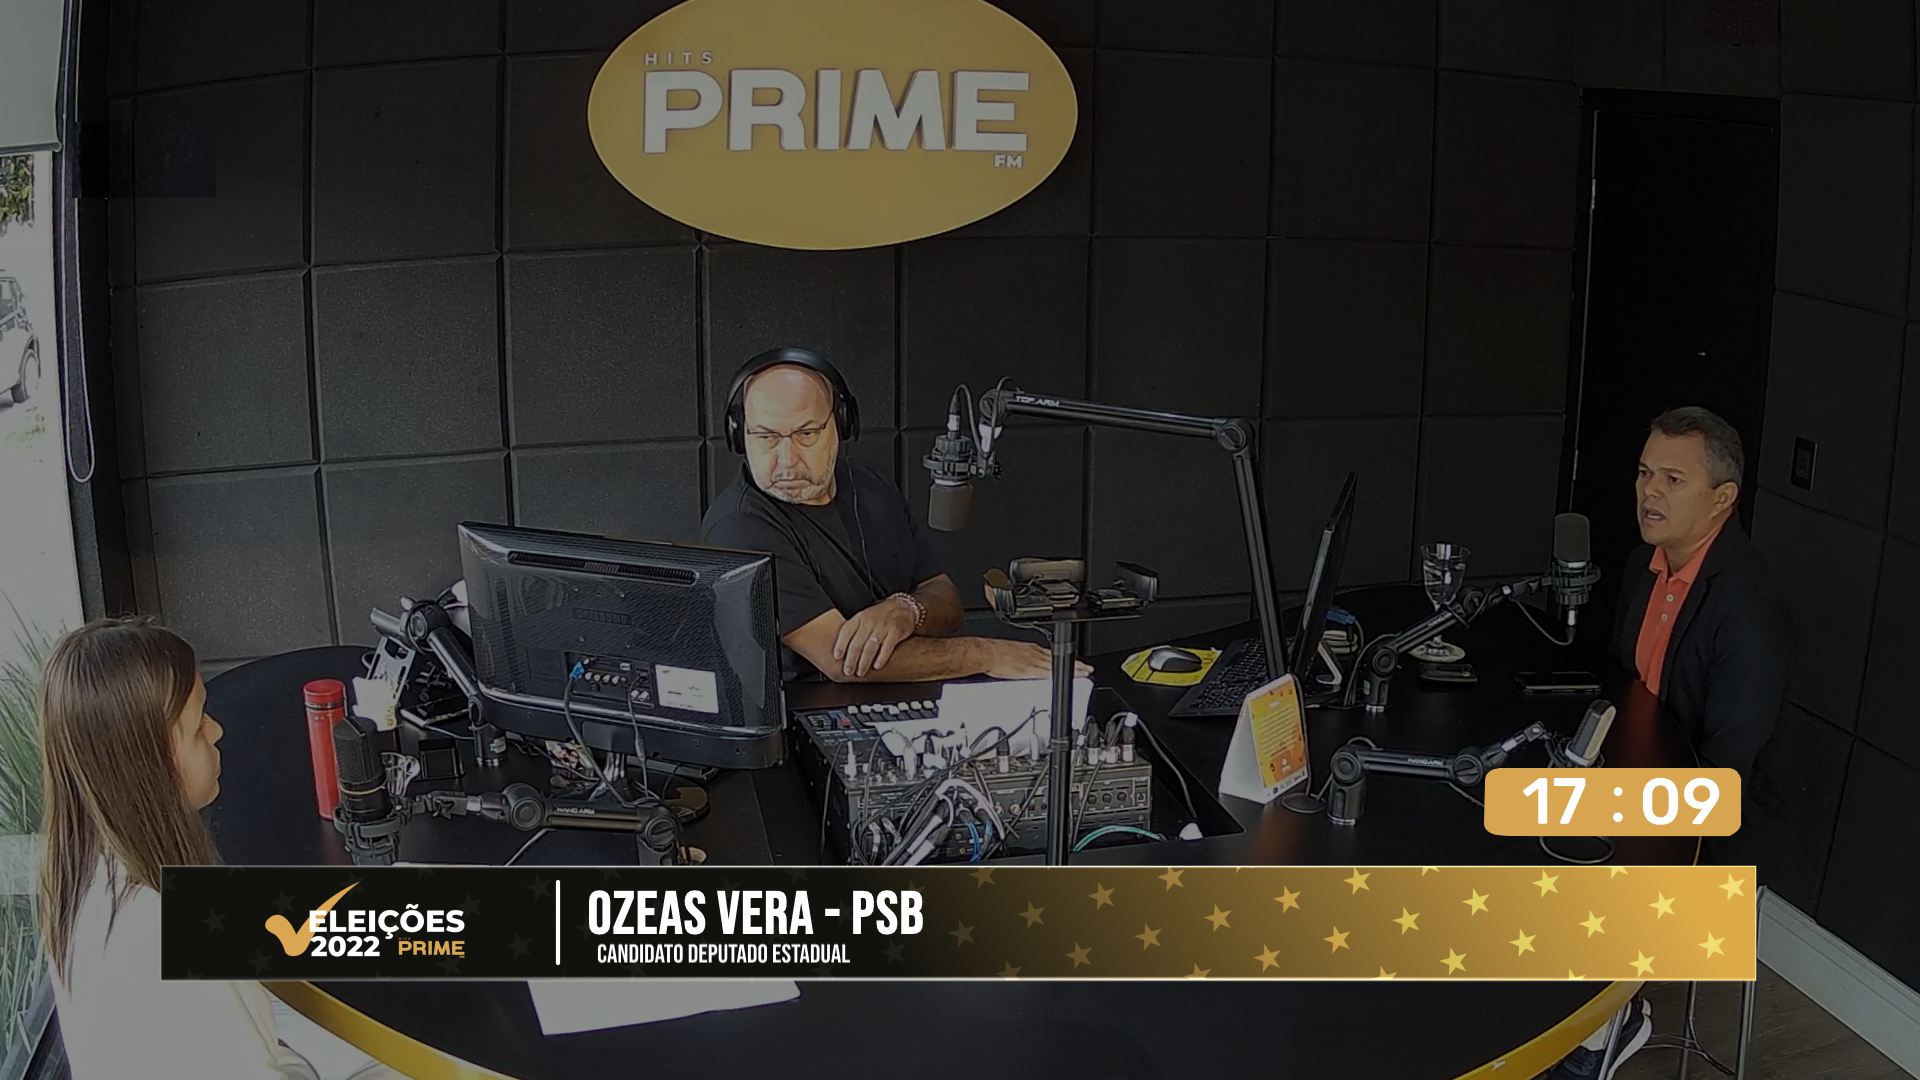 Confira a entrevista com o candidato a Deputado Estadual Ozeas Veras na Hits Prime FM 3